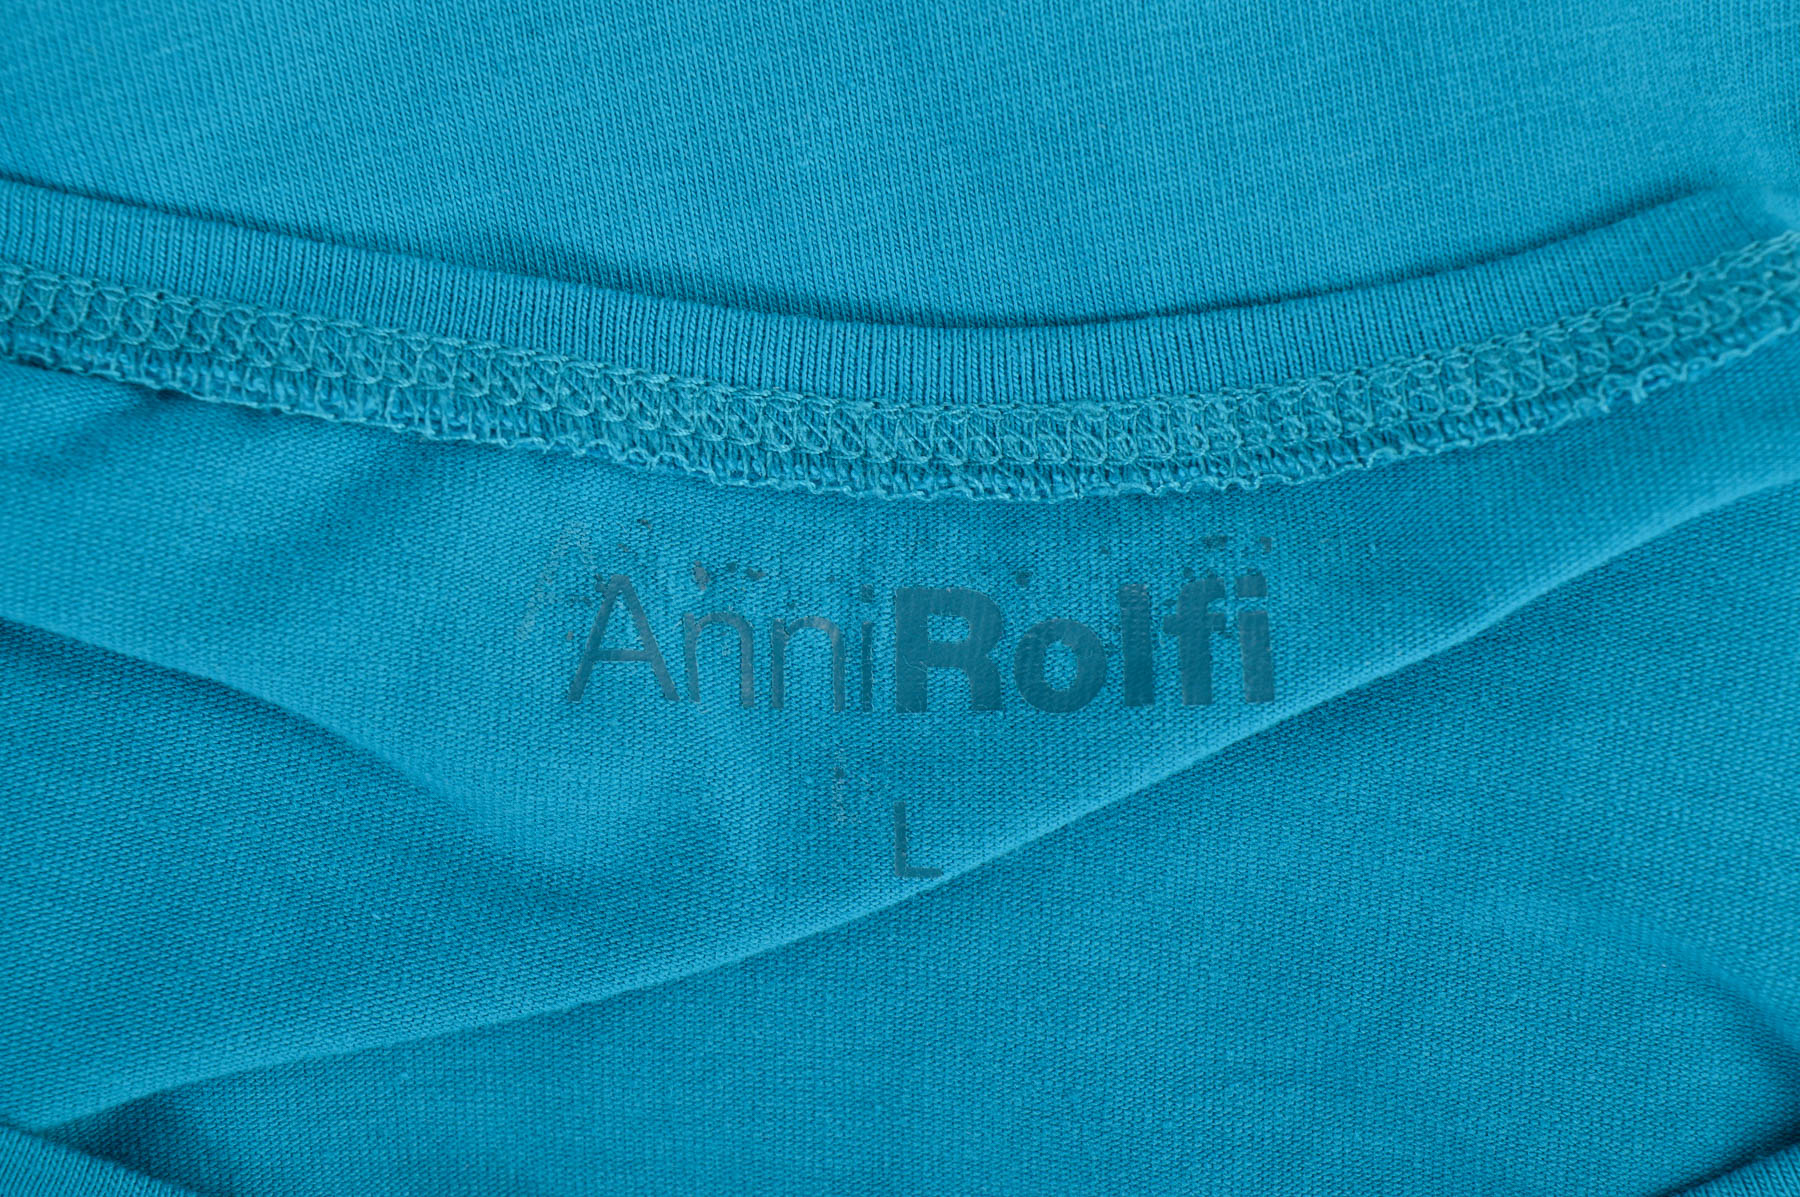 Γυναικεία μπλούζα - Anni Rolfi - 2